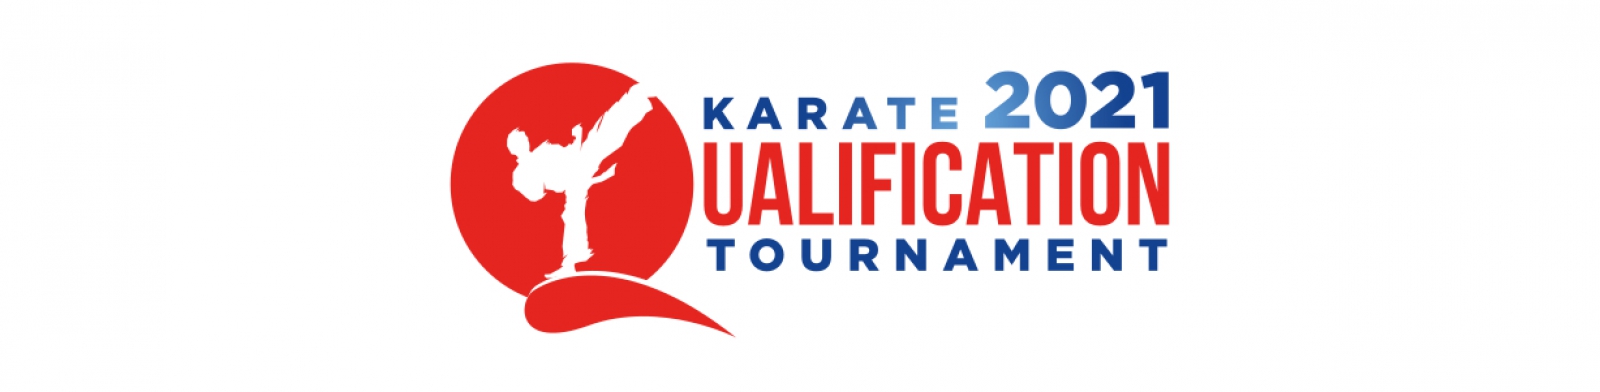 Wkf Online Registration Tokyo 2020 Qualification Tournament Paris